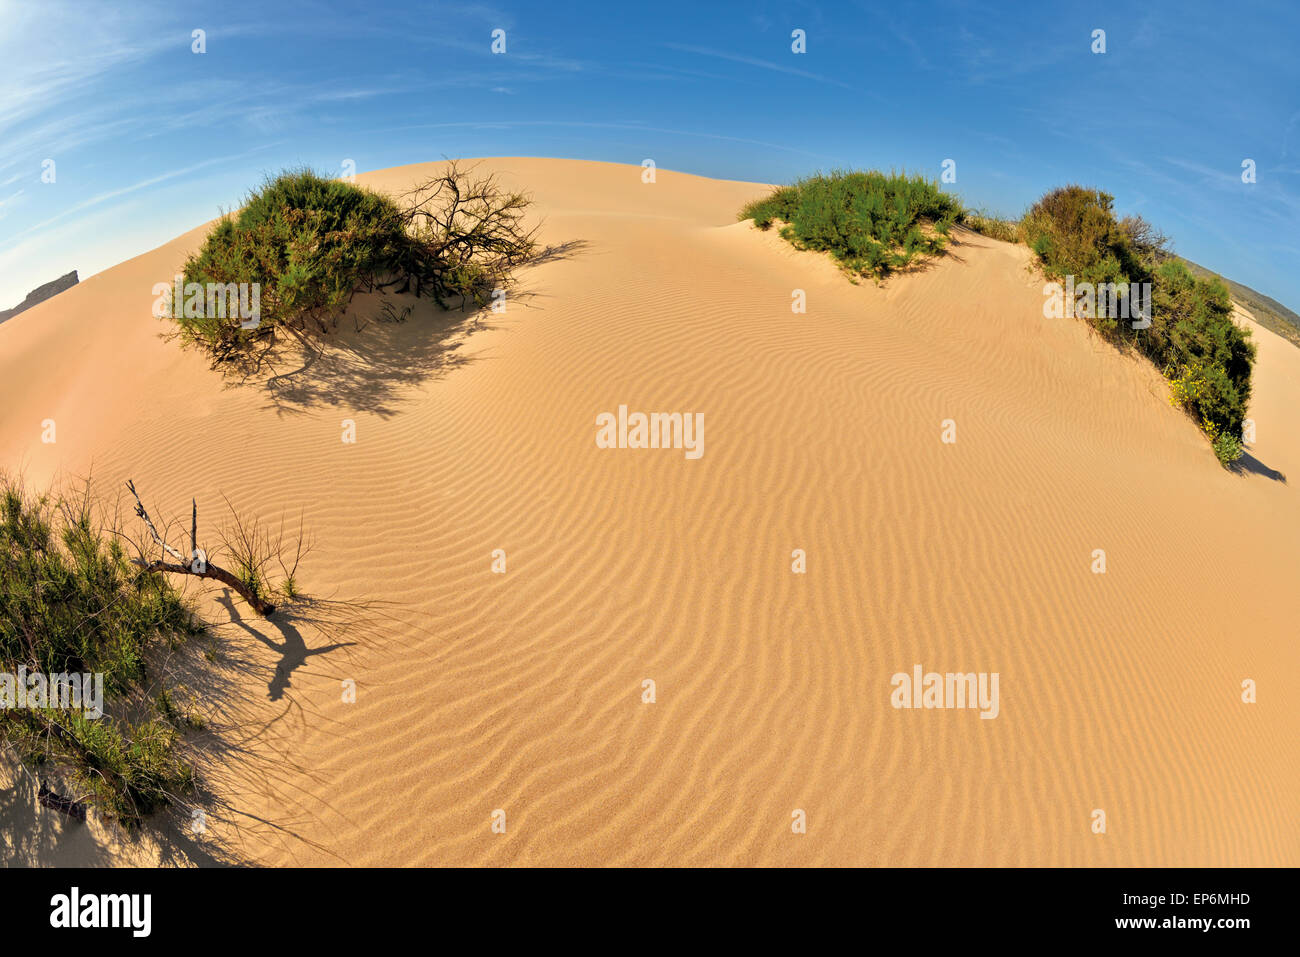 Portugal, Algarve: duna de arena con vegetación costera en Carrapateira Foto de stock